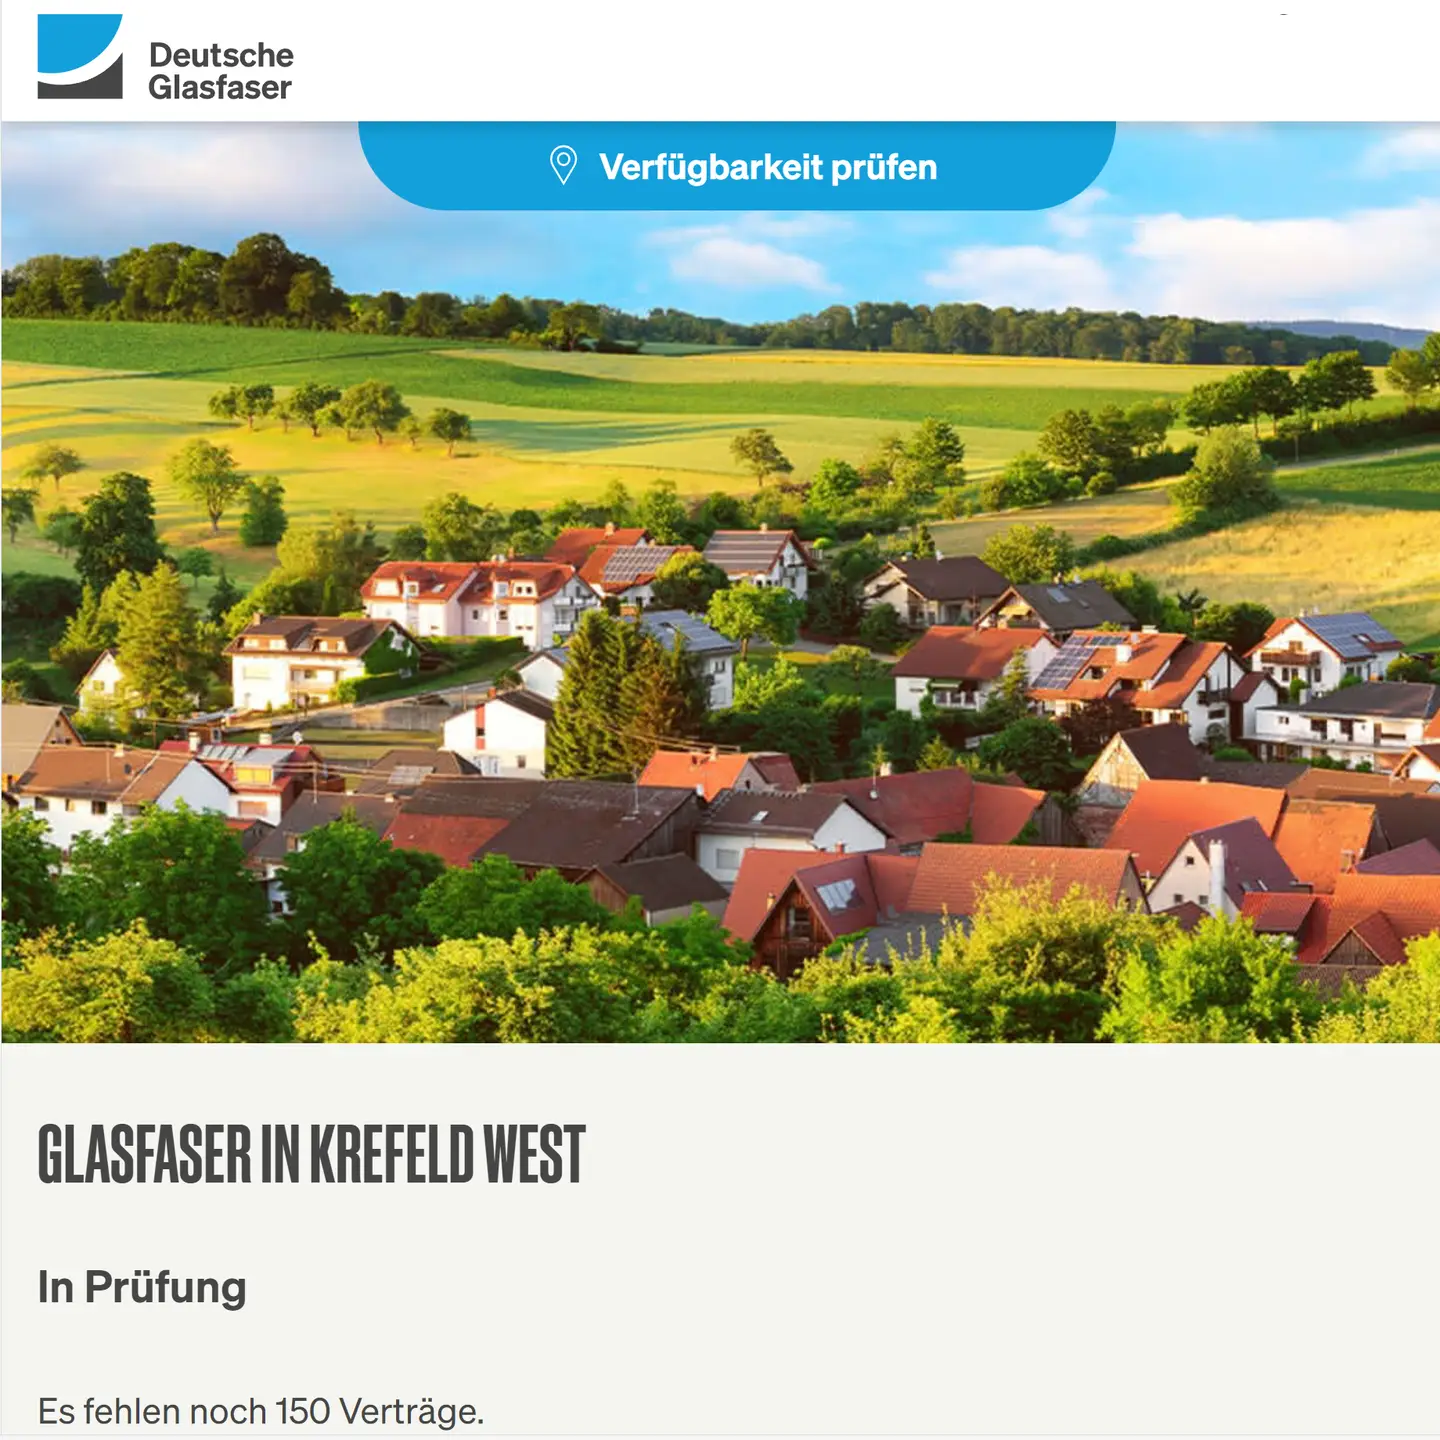 Screenshot von "Deutsche Glasfaser", oben DG Logo, ein Landschaftsbild, Schriftzüge "Glasfaser in Krefeld-West", in Prüfung und die letzte Anzahl fehlender Verträge